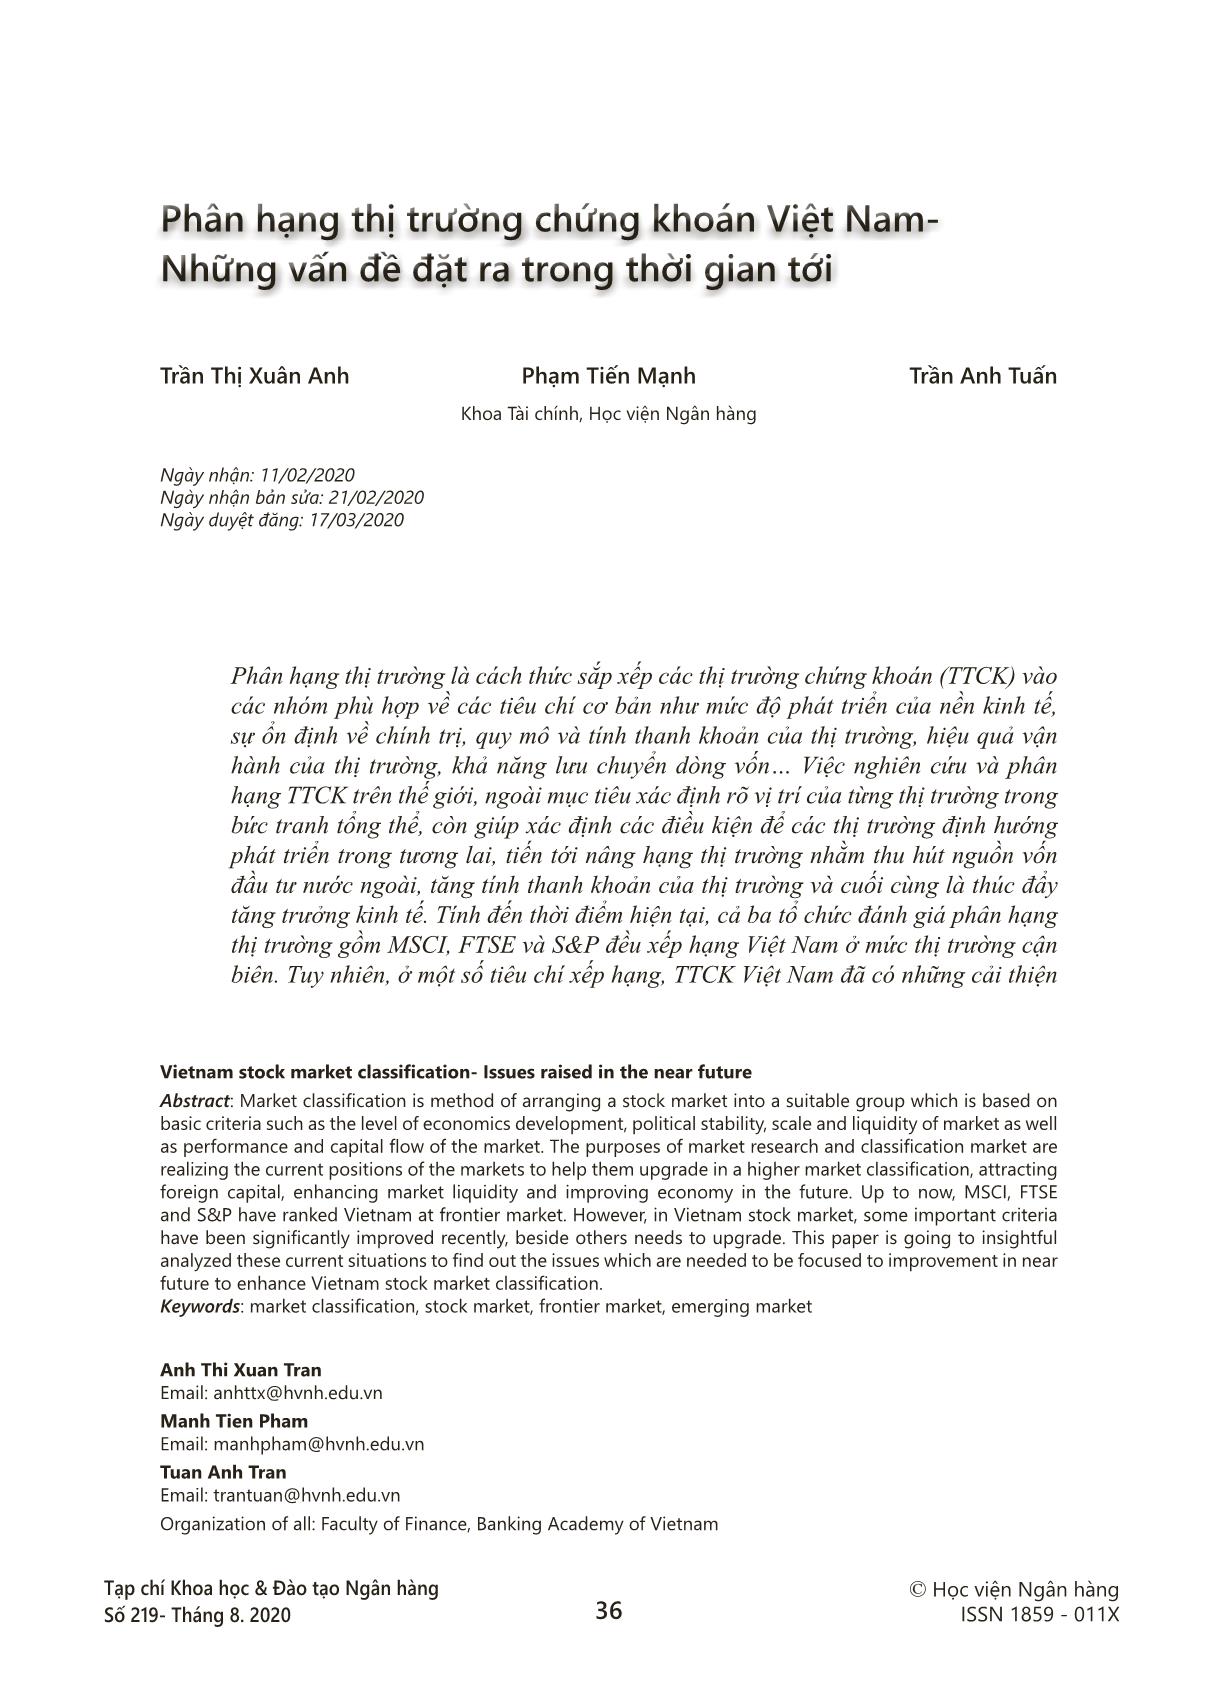 Phân hạng thị trường chứng khoán Việt Nam - Những vấn đề đặt ra trong thời gian tới trang 1